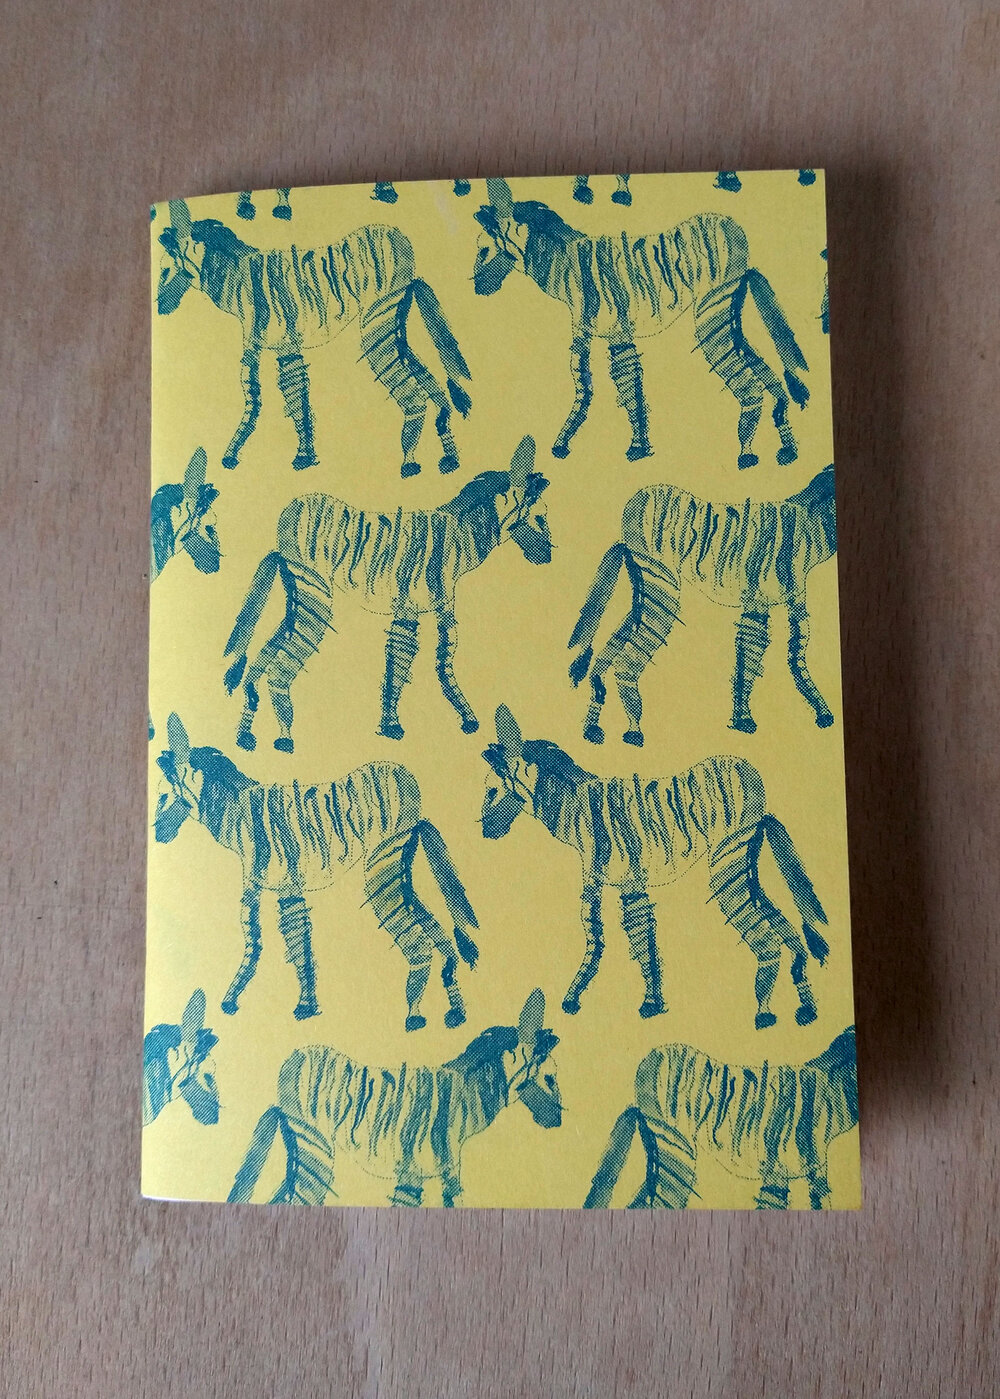 Riso Printed A6 Notebook, Zebra Design by Daryn